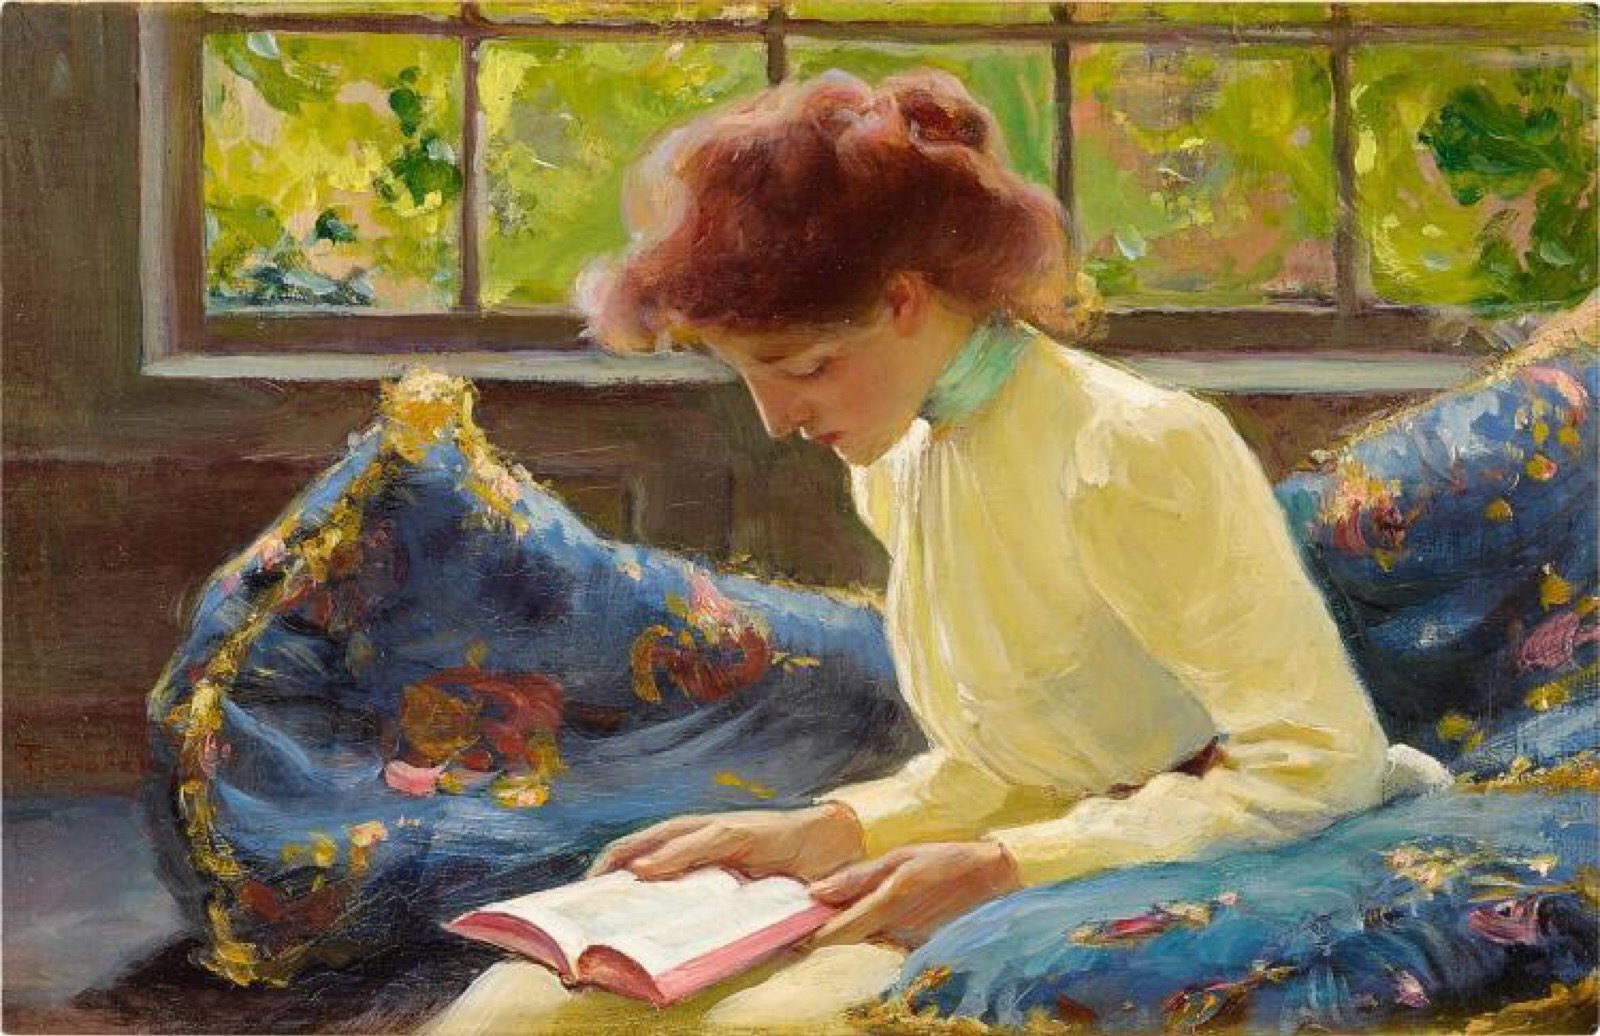 坐窗边读书的女人(捷克画家弗朗齐歇克·德沃夏克作品)